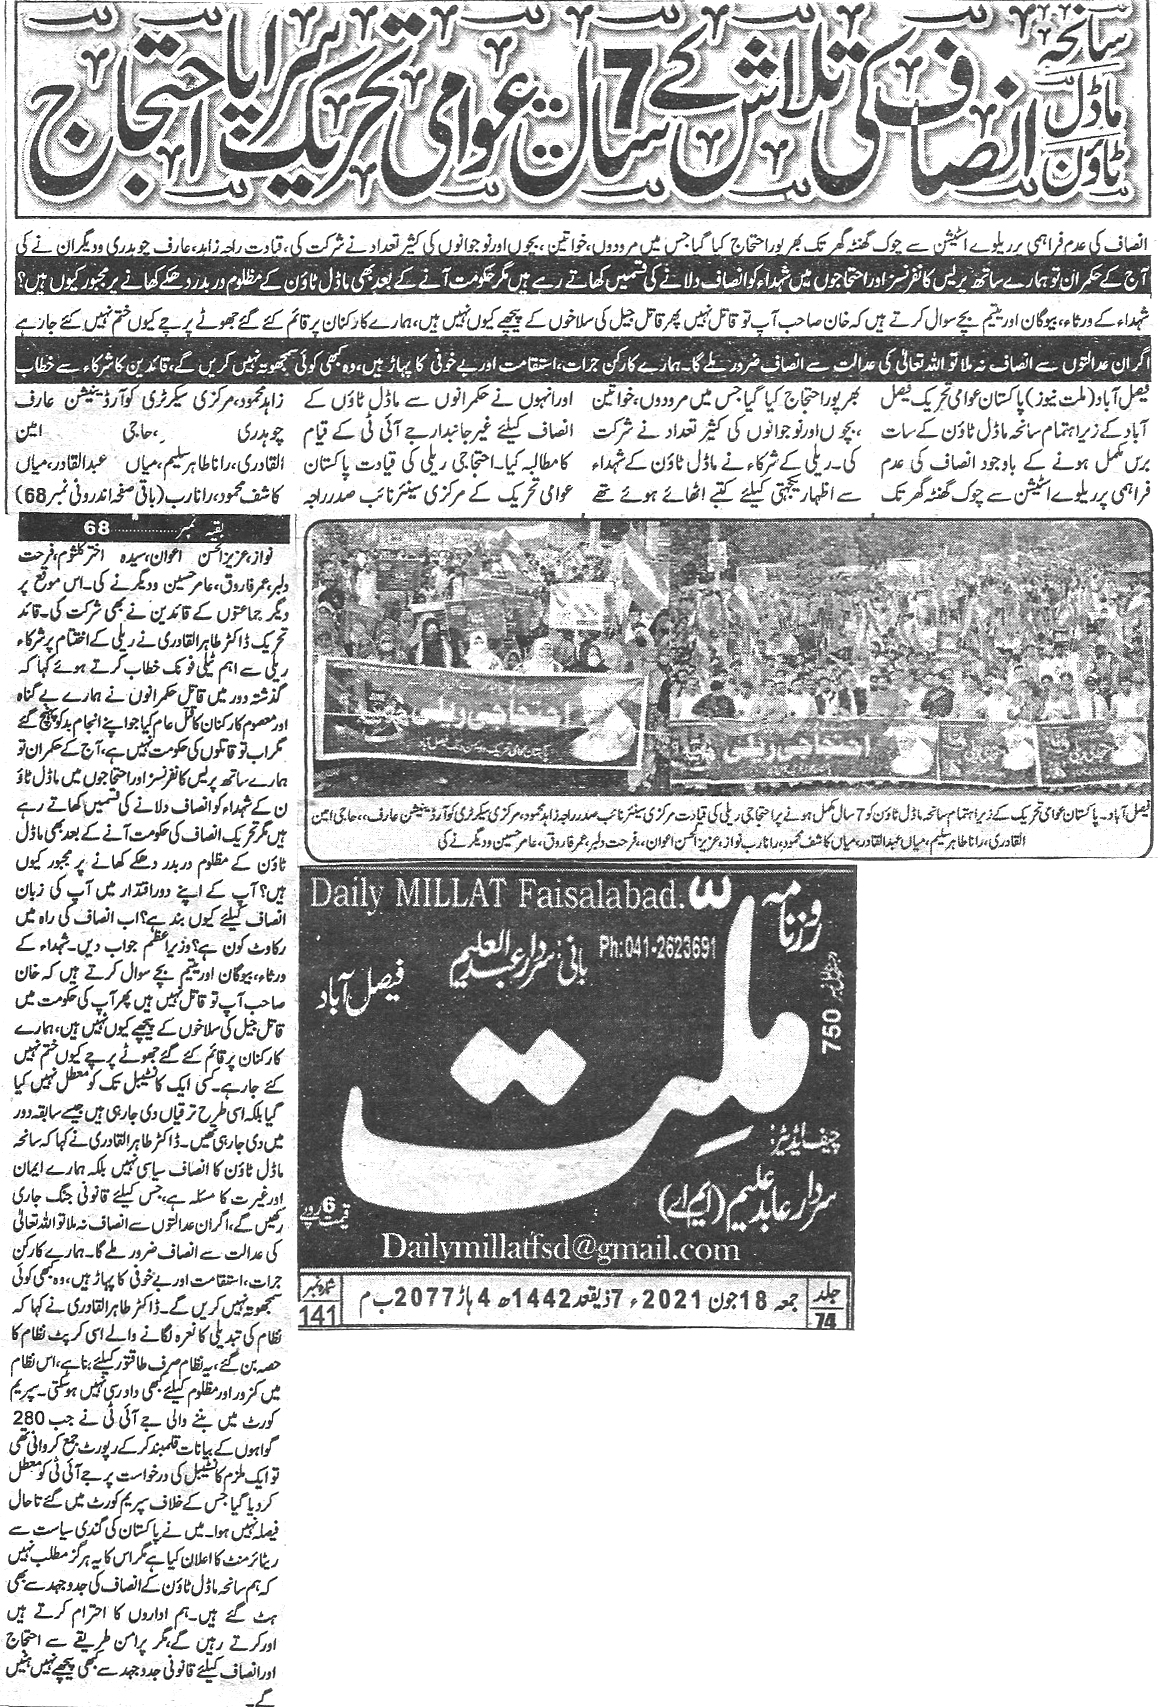 Minhaj-ul-Quran  Print Media Coverage Daily Millat page 1 